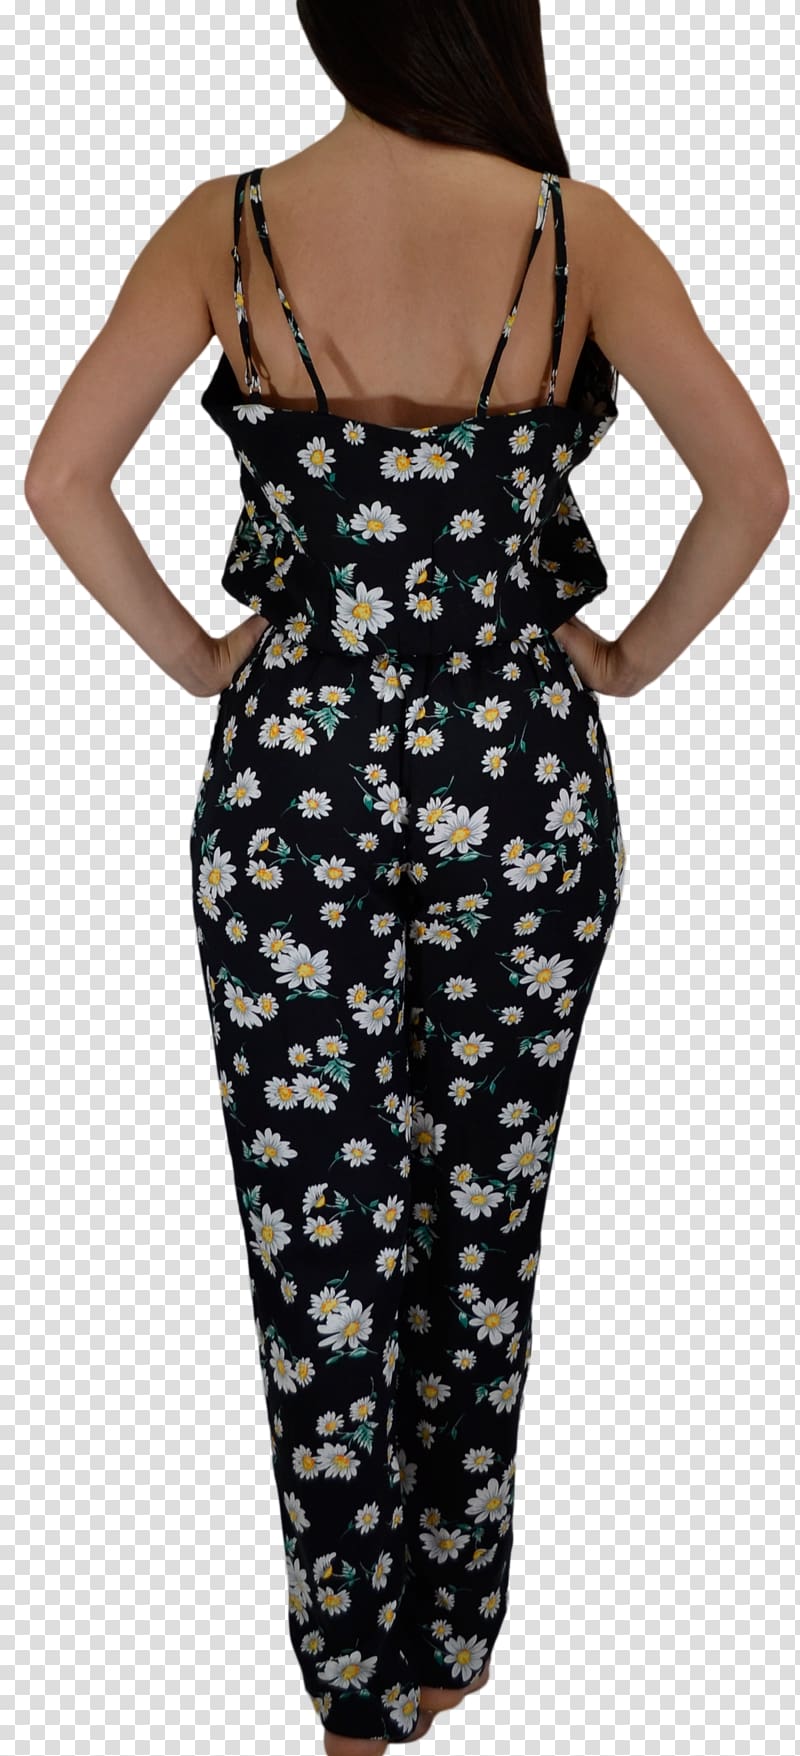 Polka dot ShopStyle Pareo Shoulder Dress, dress transparent background PNG clipart